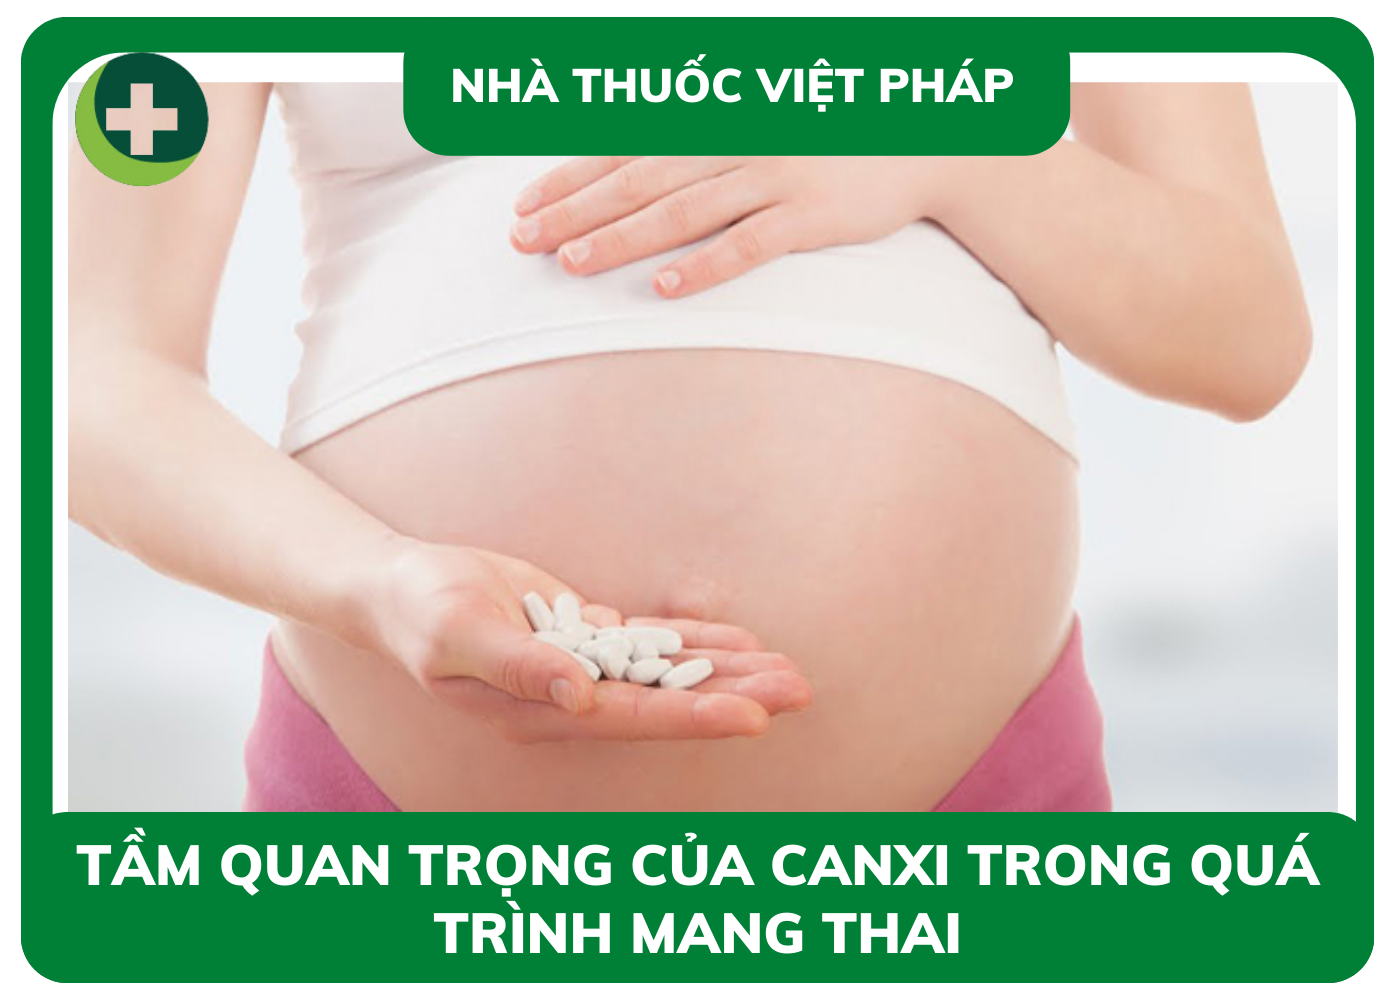 Tầm quan trọng của Canxi trong quá trình thai kỳ